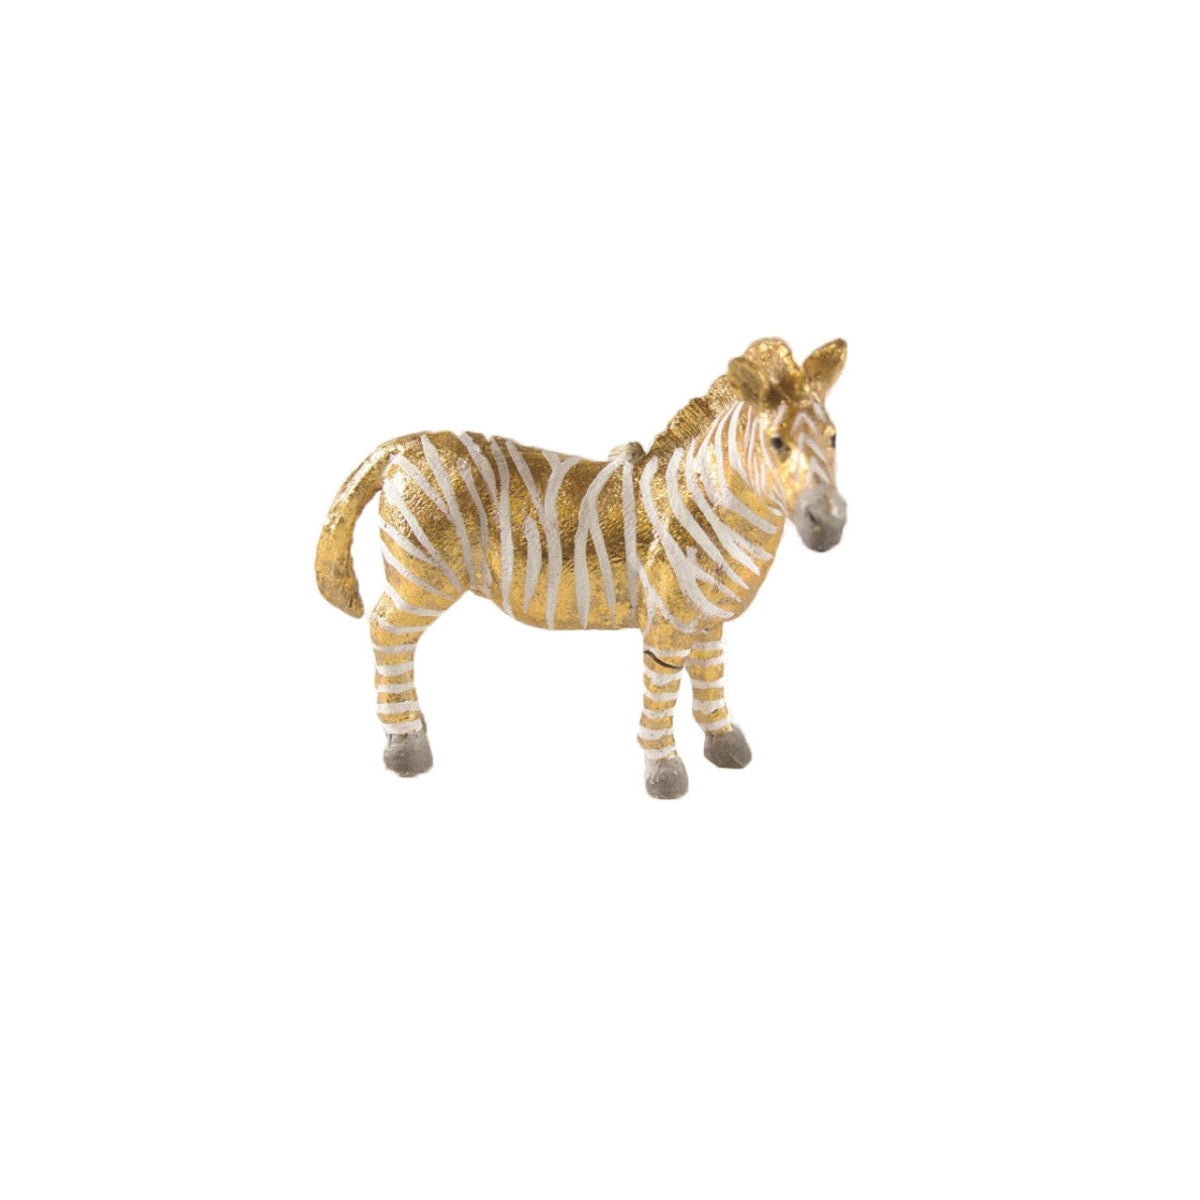 Fantastical Zebra Ornament - Gold/White